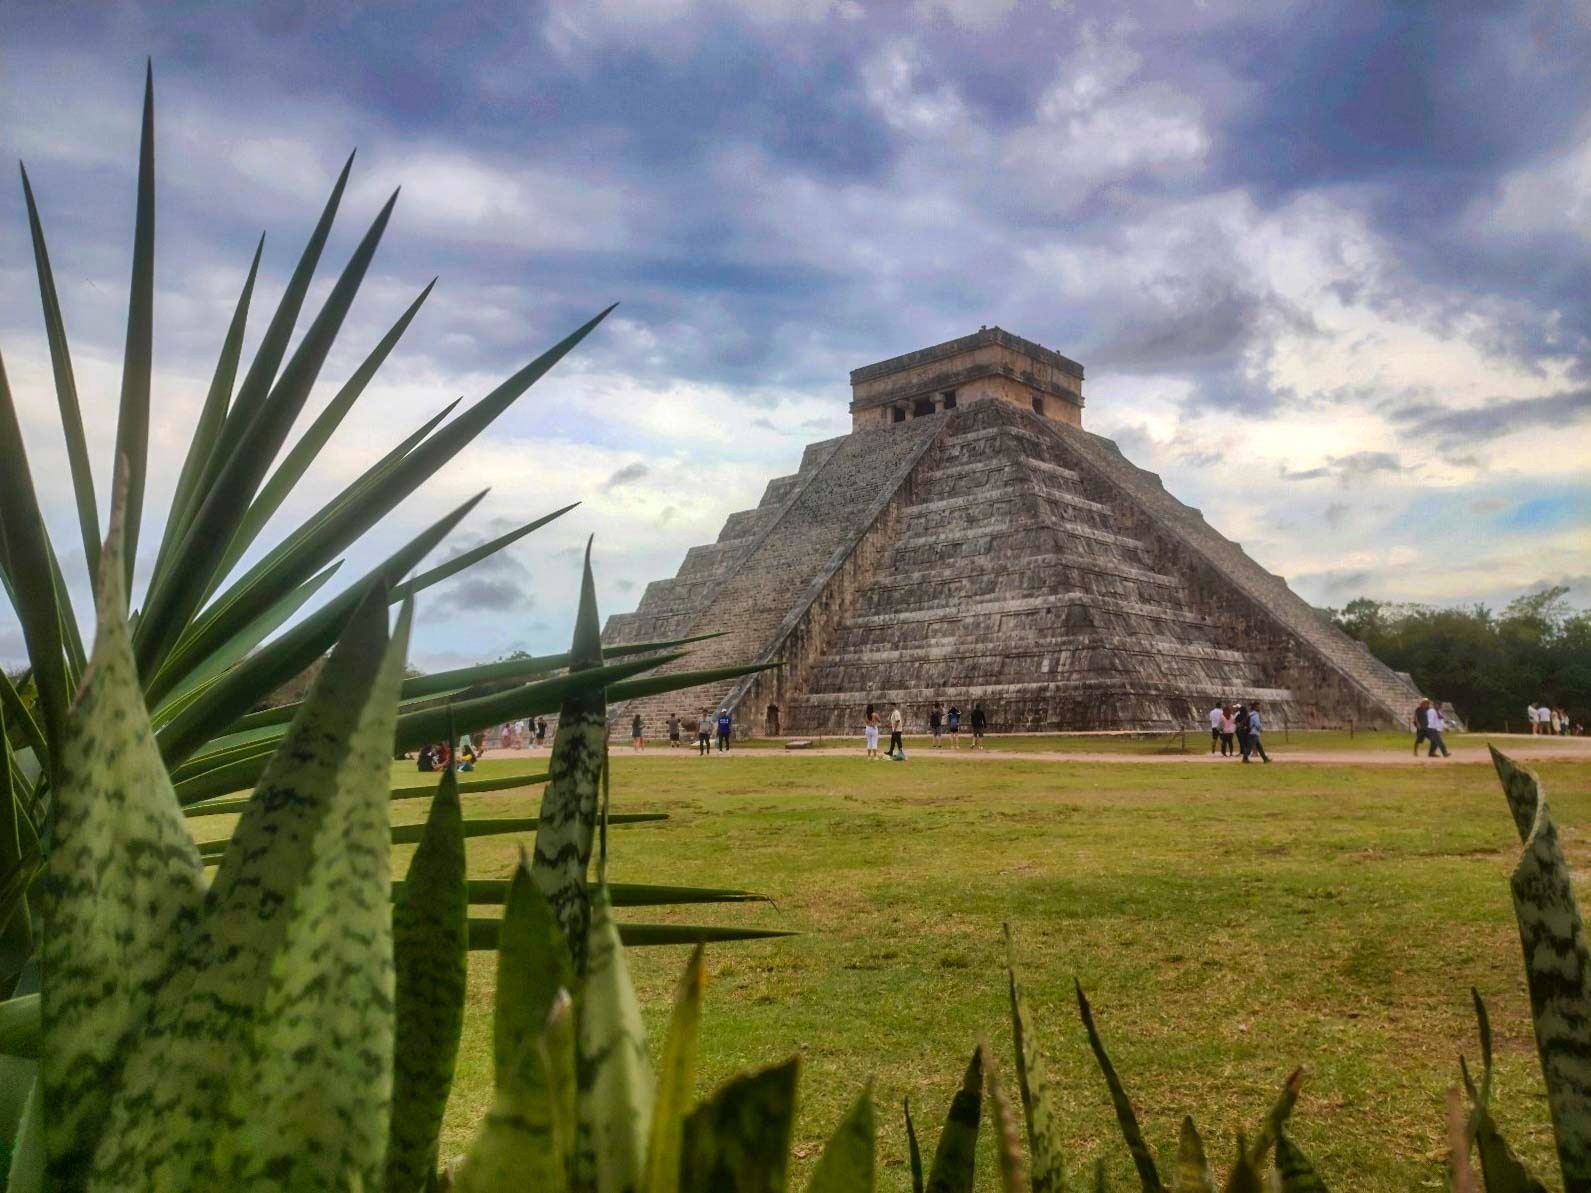 Normalmente, el tour a Chichén Itzá, una de las maravillas del mundo; ronda entre los 600 y 800 pesos